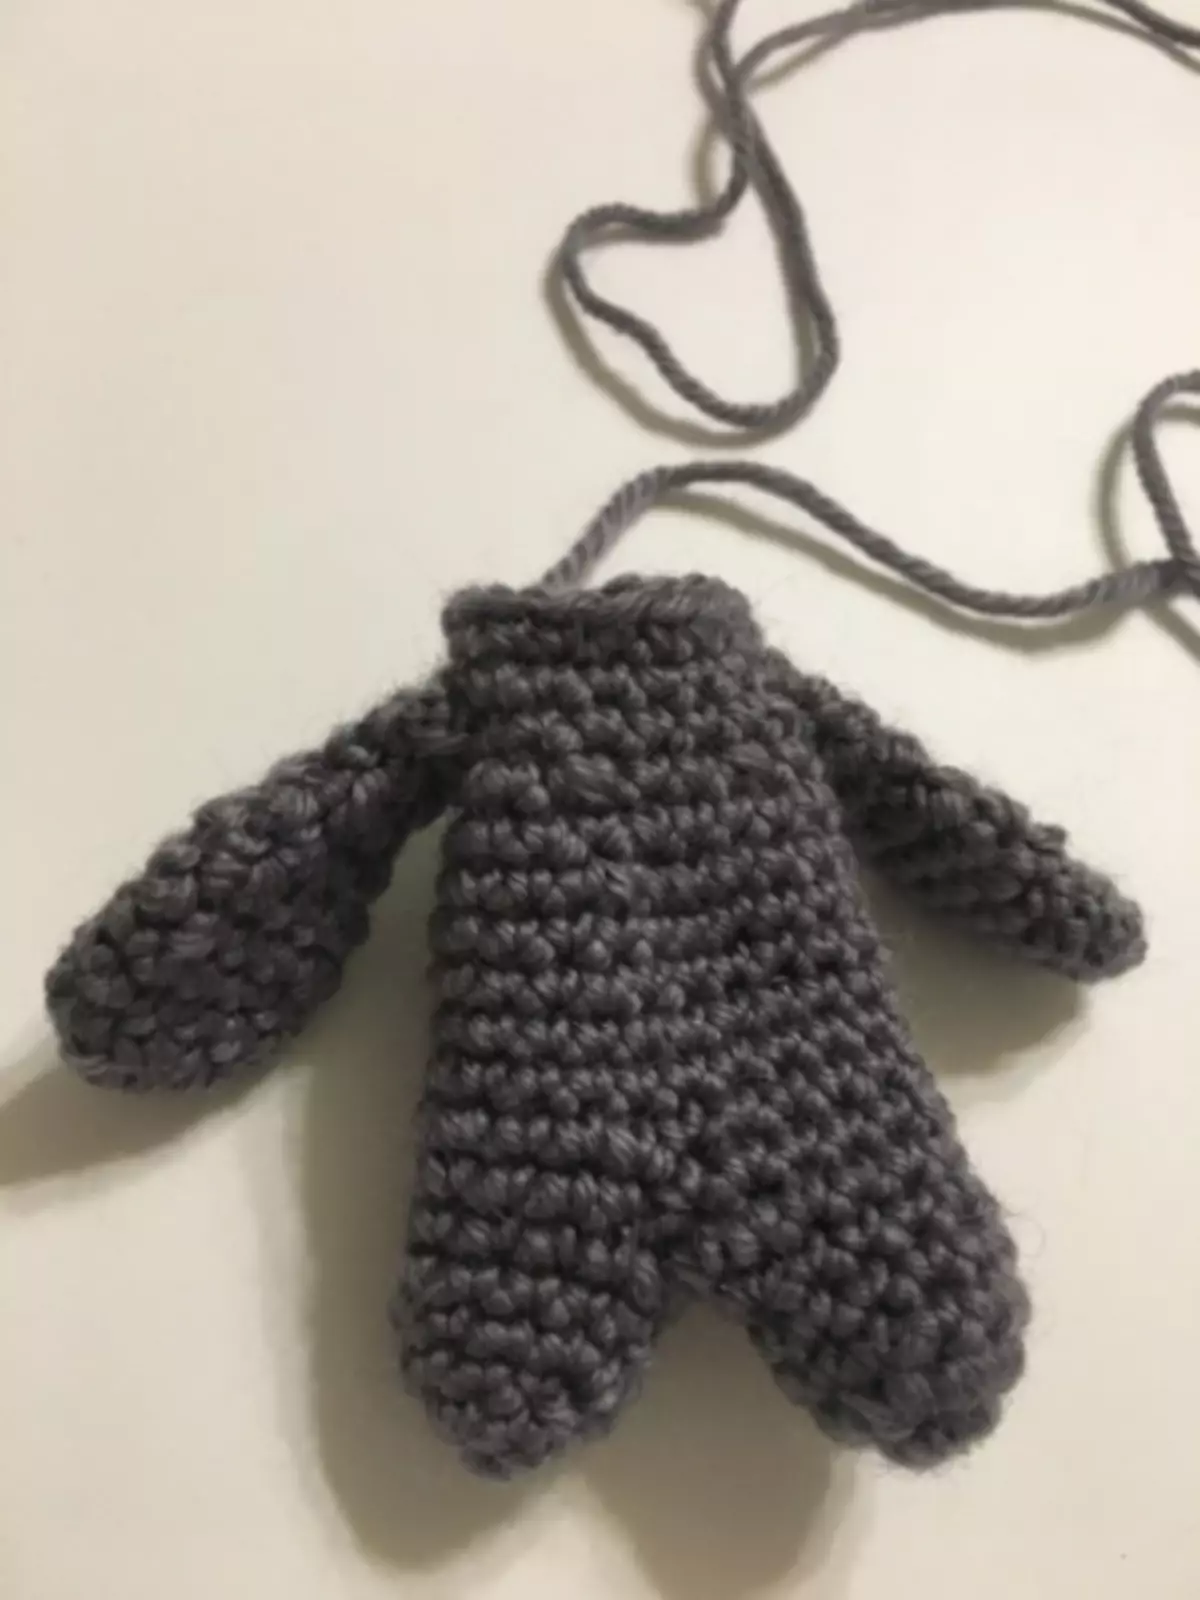 Crochet imbwa: chirongwa uye tsananguro yeiyo tenzi kirasi ine vhidhiyo